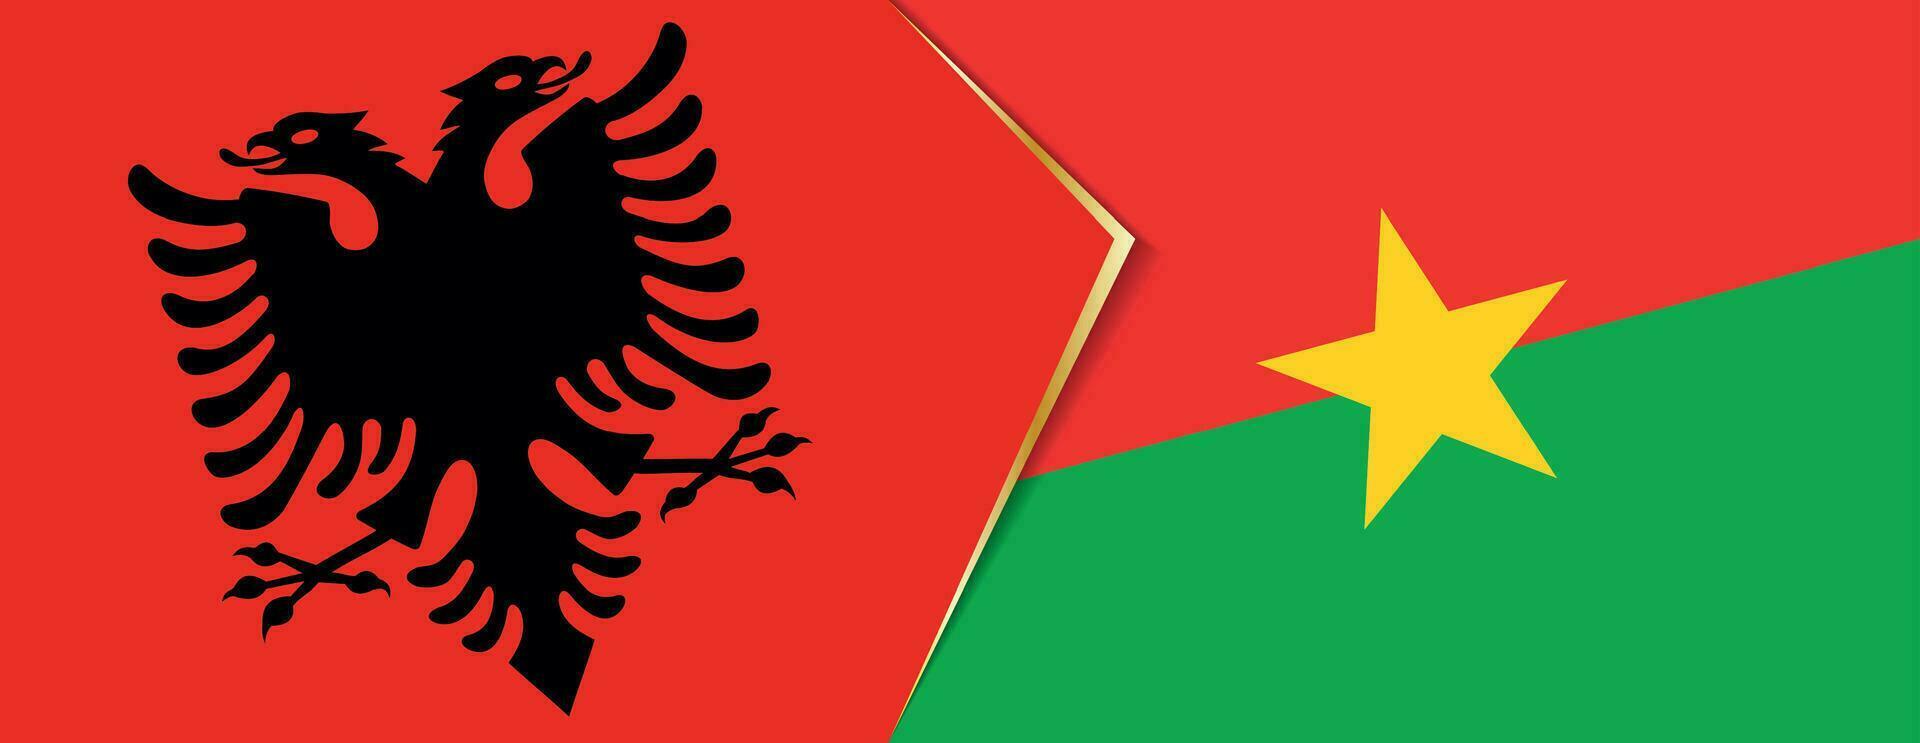 Albânia e burkina faso bandeiras, dois vetor bandeiras.